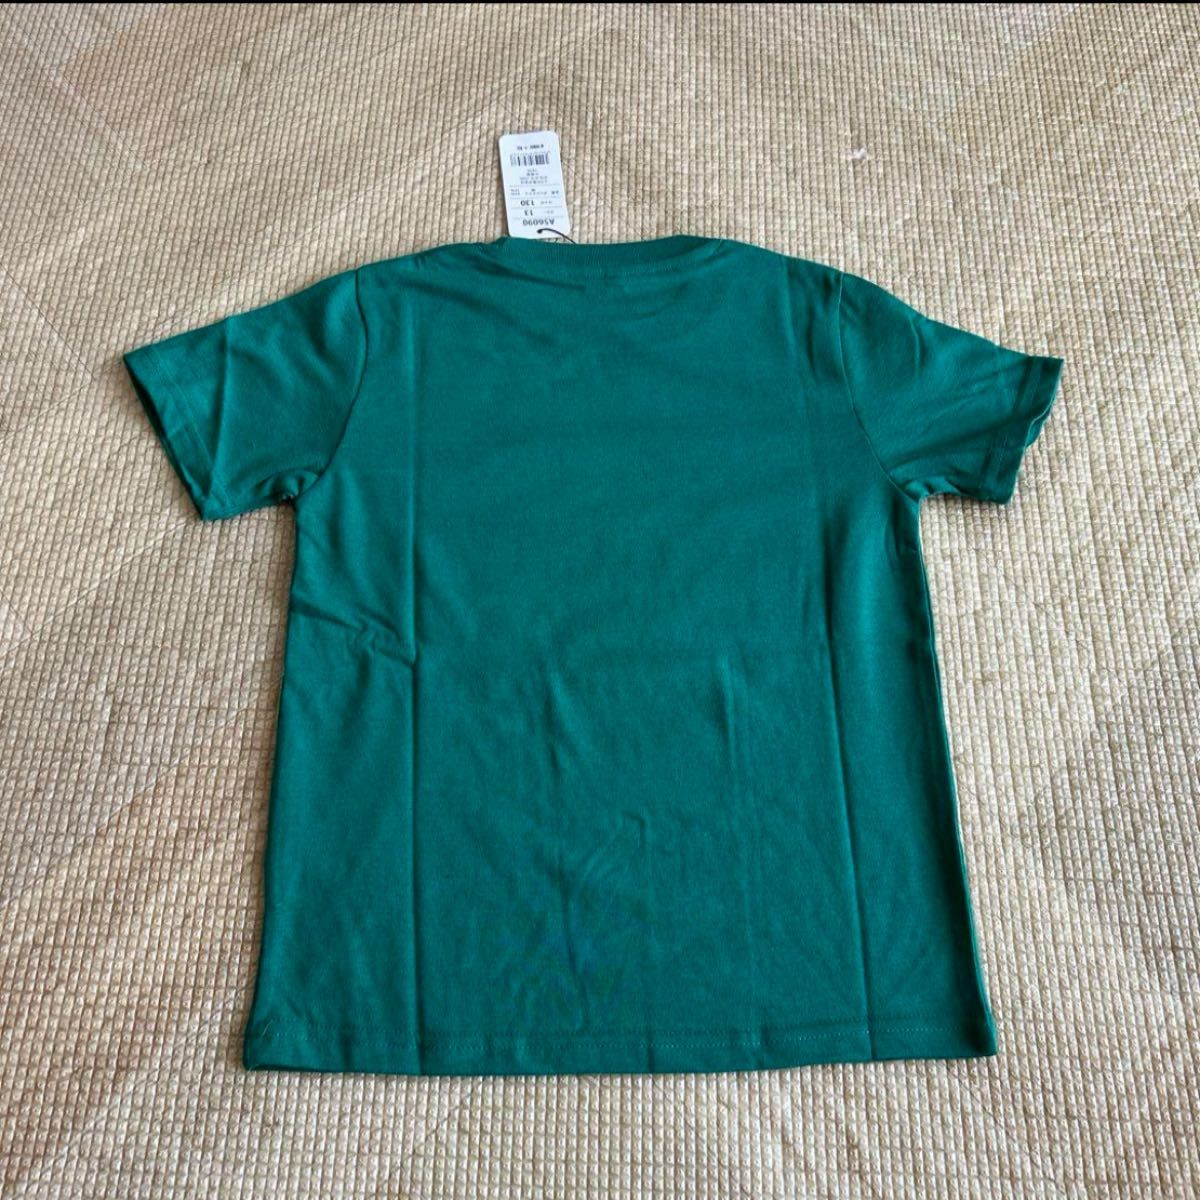 新品未使用タグ付き コアラのマーチ Tシャツ 130